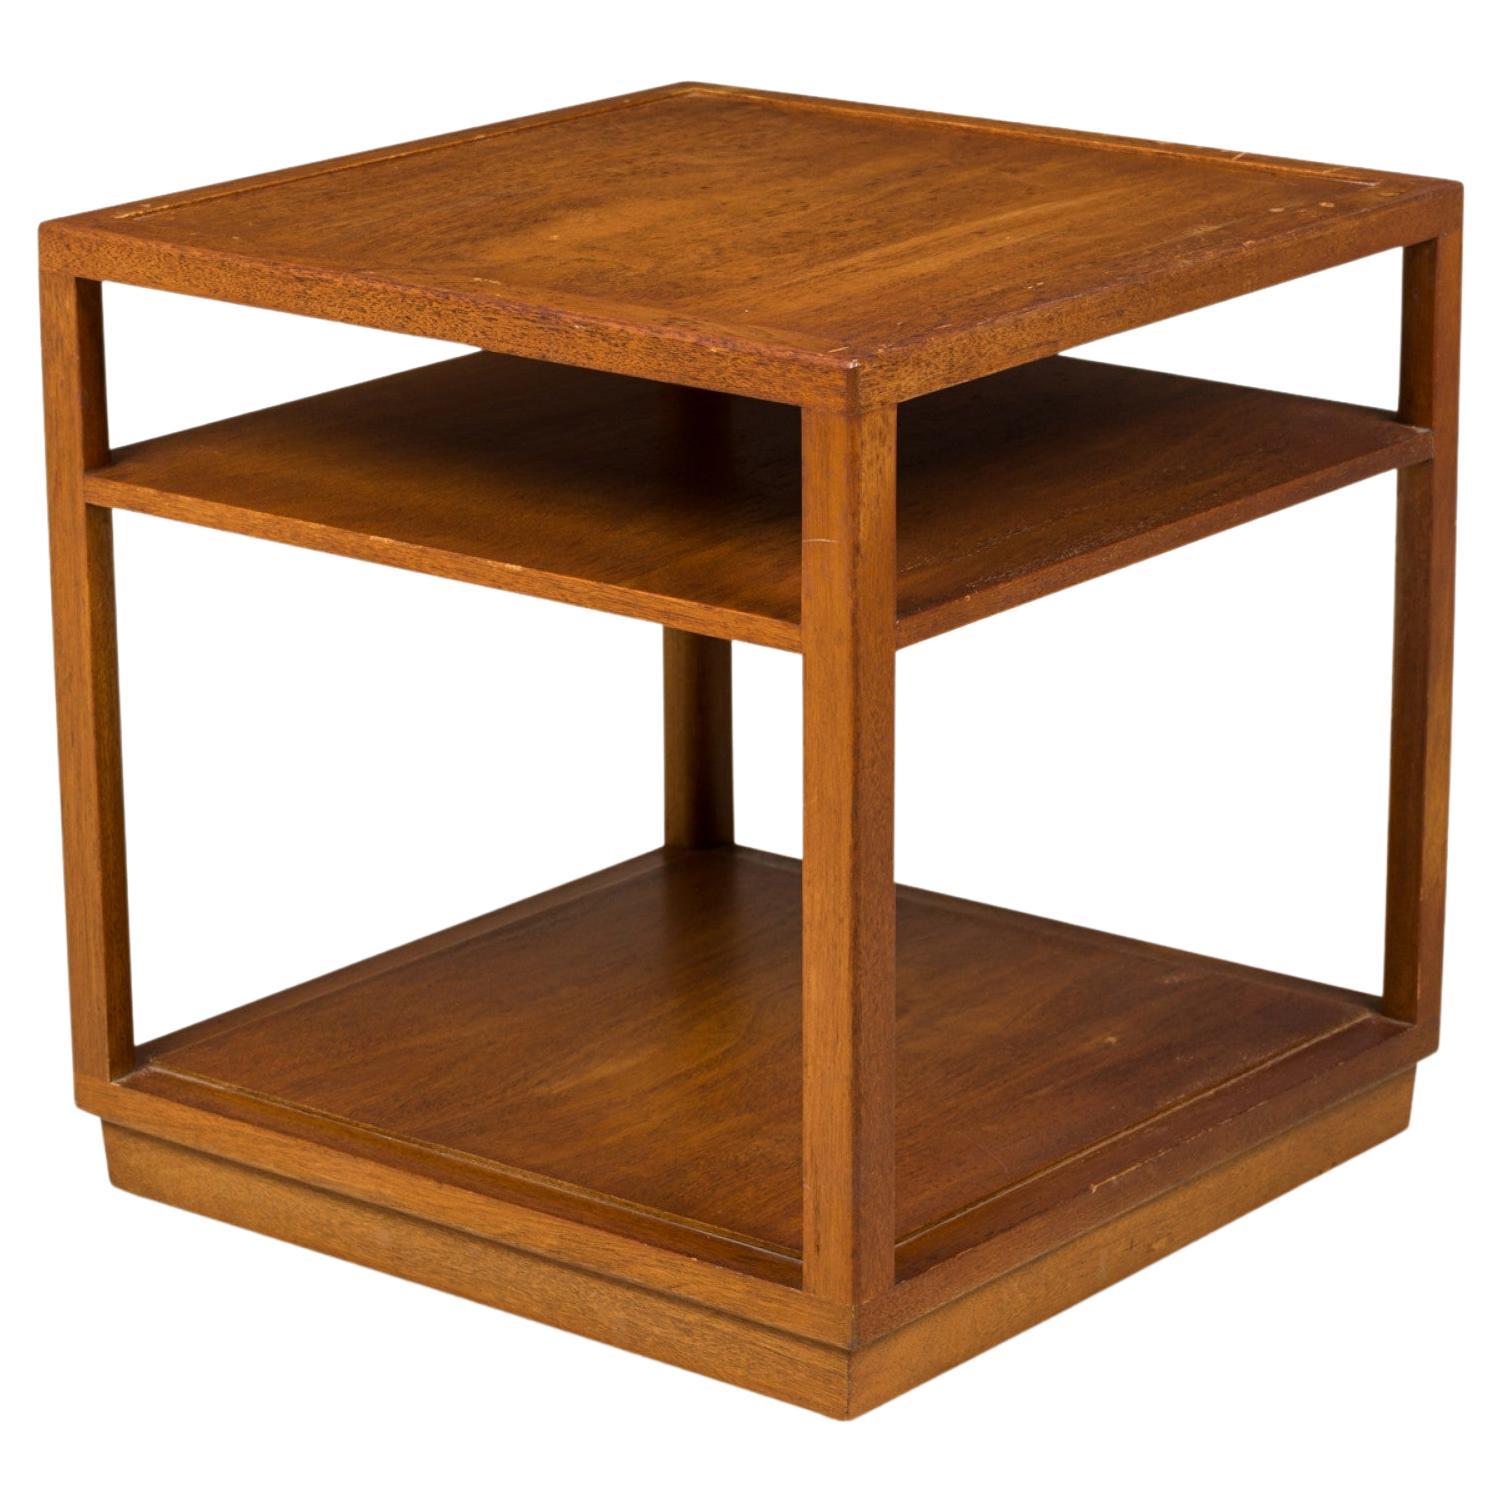 Edward Wormley for Dunbar Square Wooden Double Shelf End / Side Table (Table d'appoint en bois à deux plateaux)